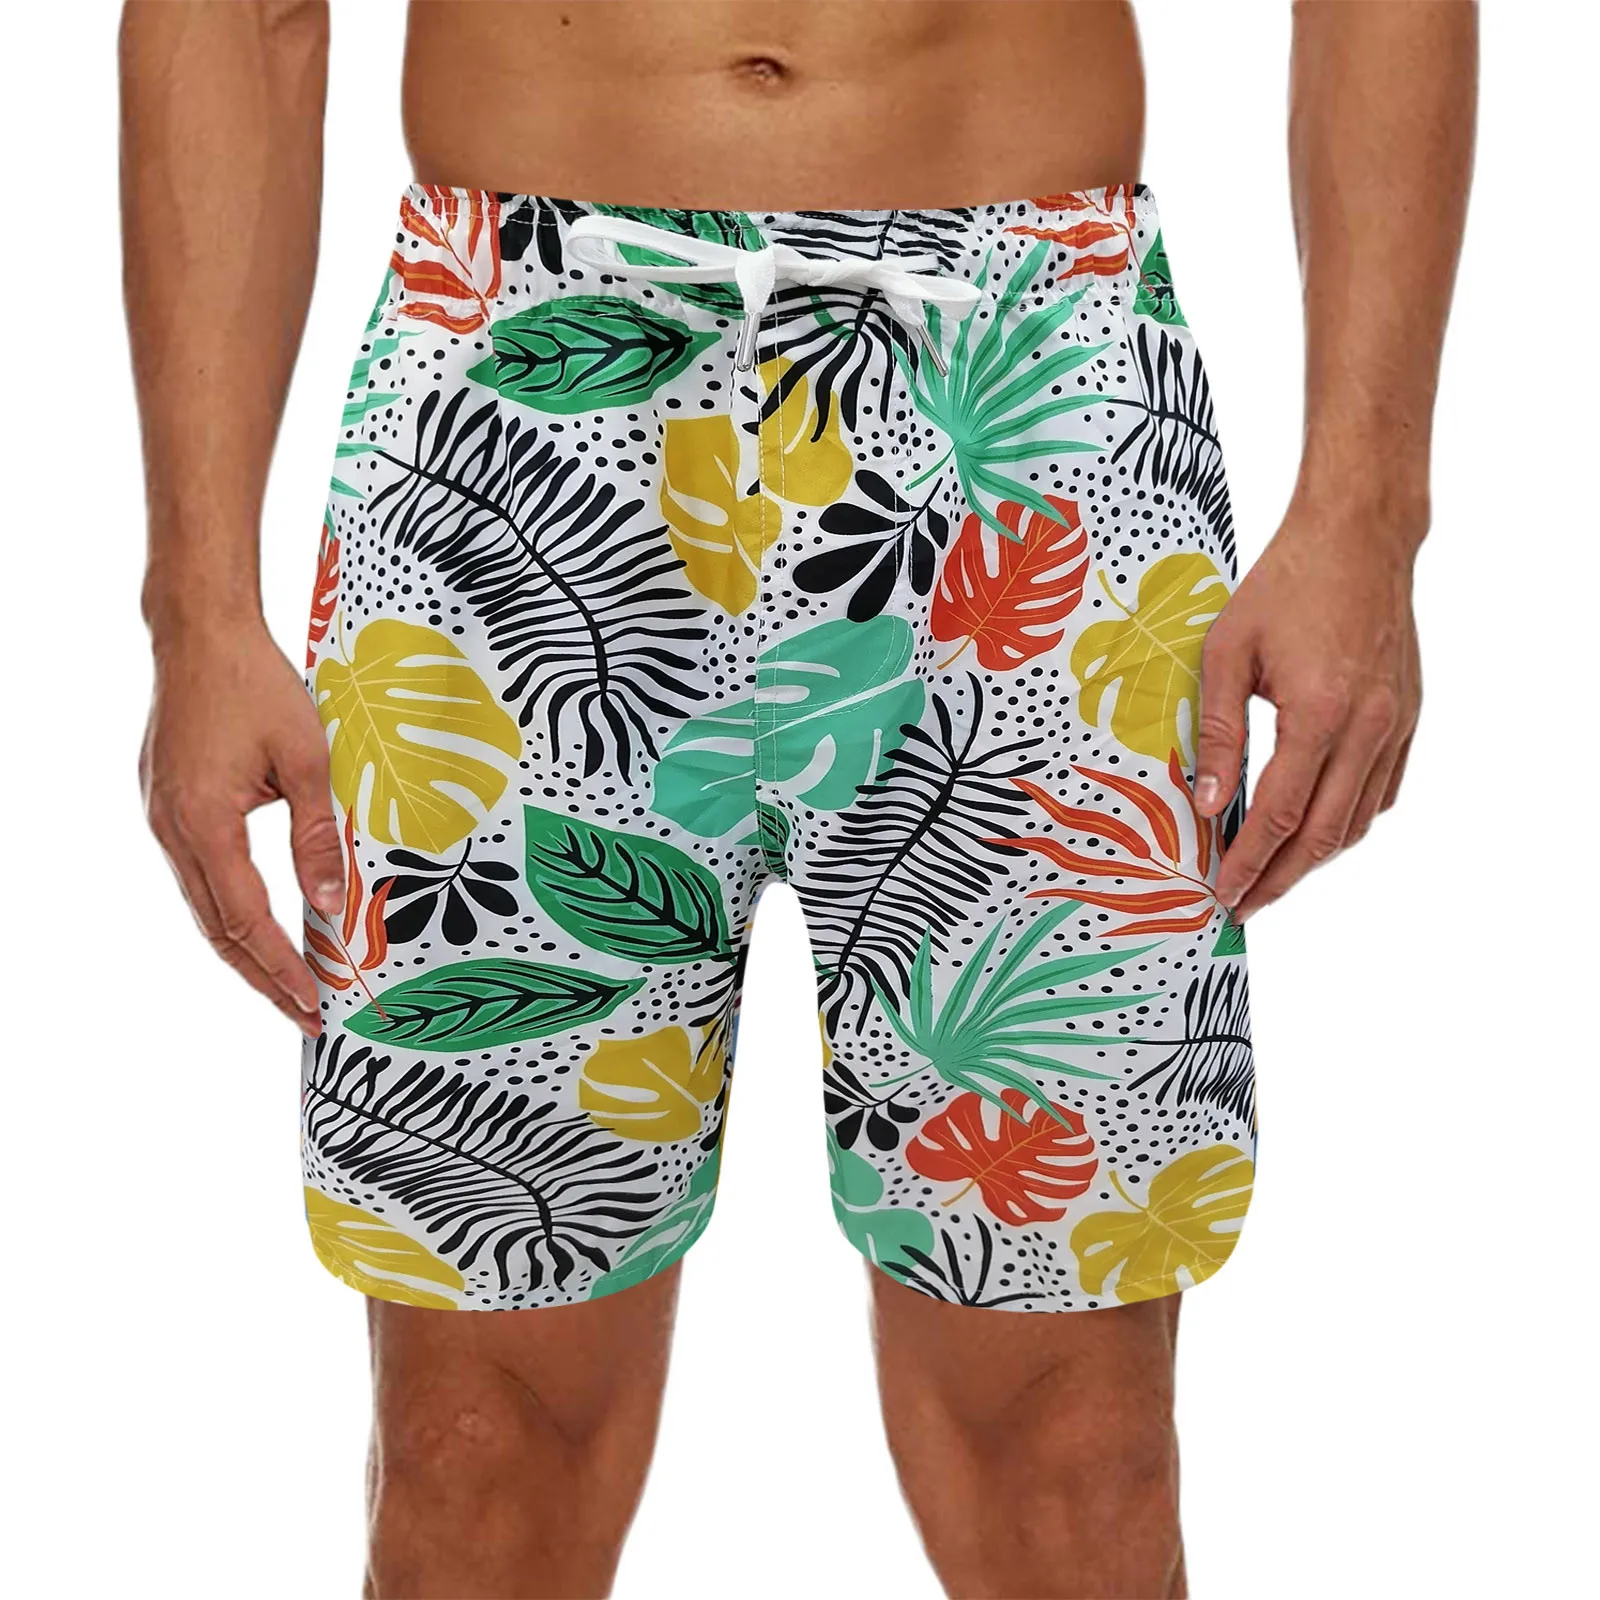 

Гавайский мужской купальник, купальник, Мужской Быстросохнущий дышащий купальный костюм, мужские пляжные шорты, одежда для плавания, шорты